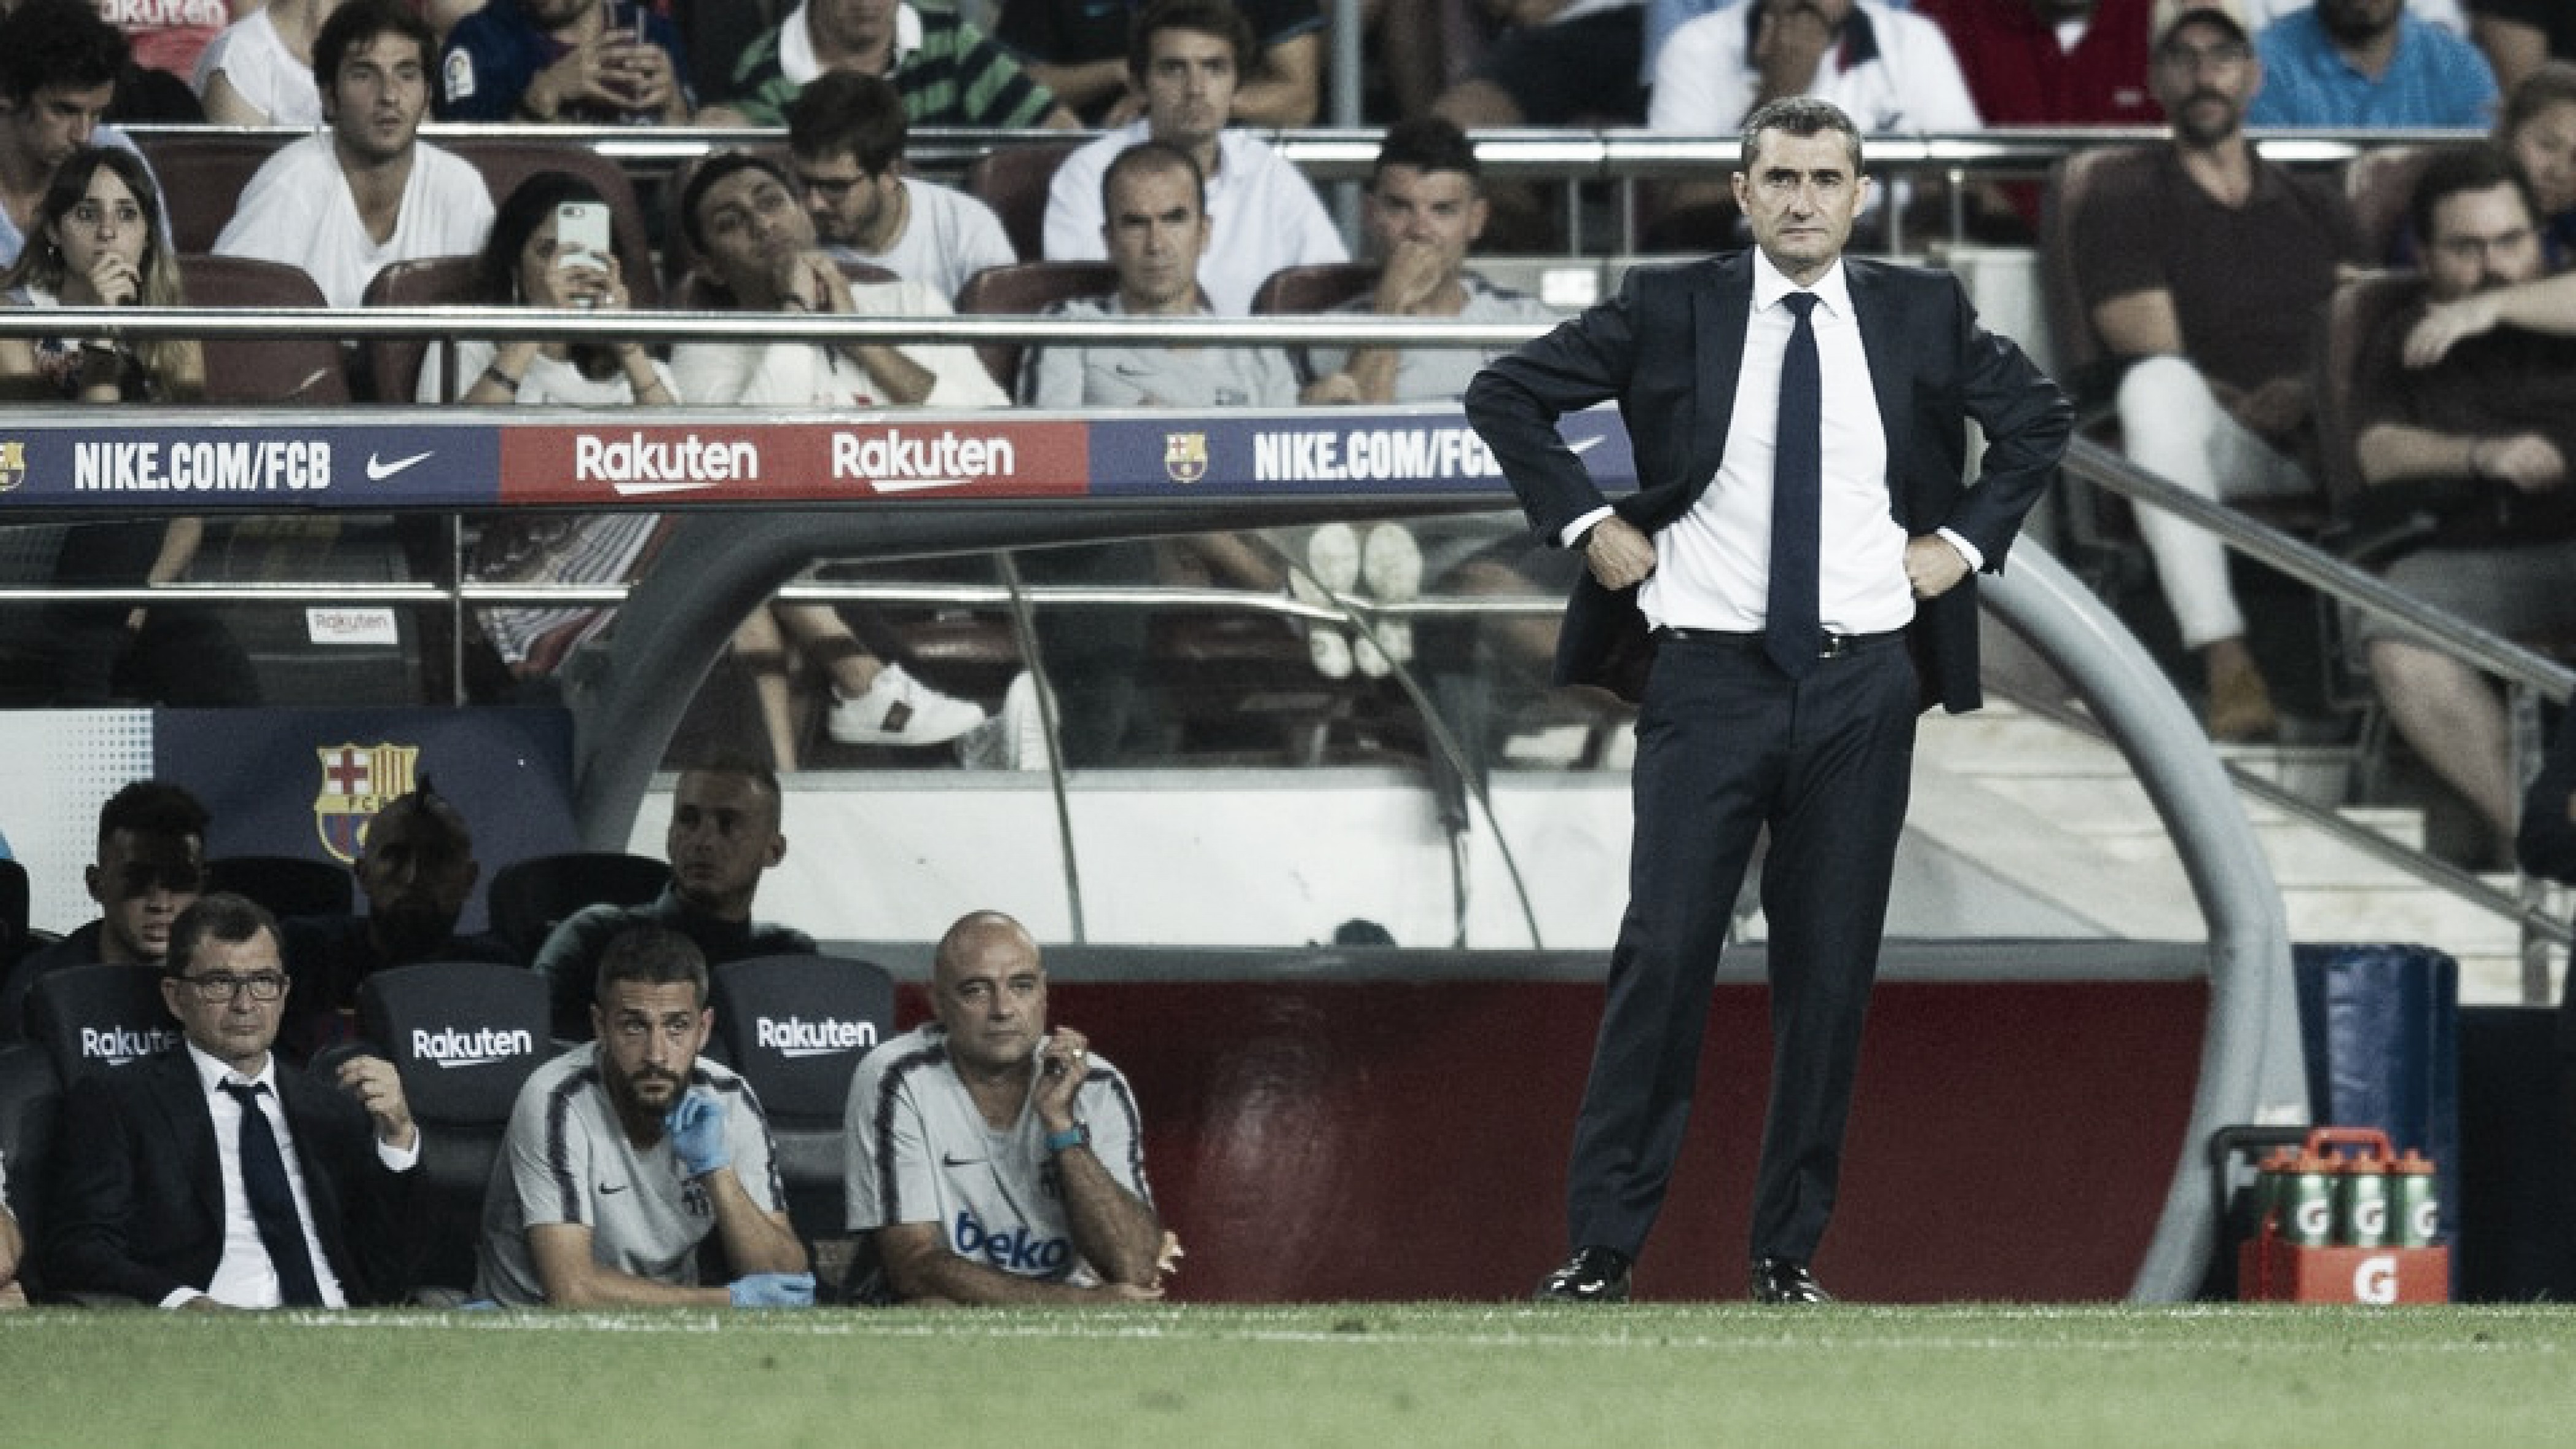 Ernesto Valverde lamenta empate do Barcelona, mas destaca reação: "Temos que superar"